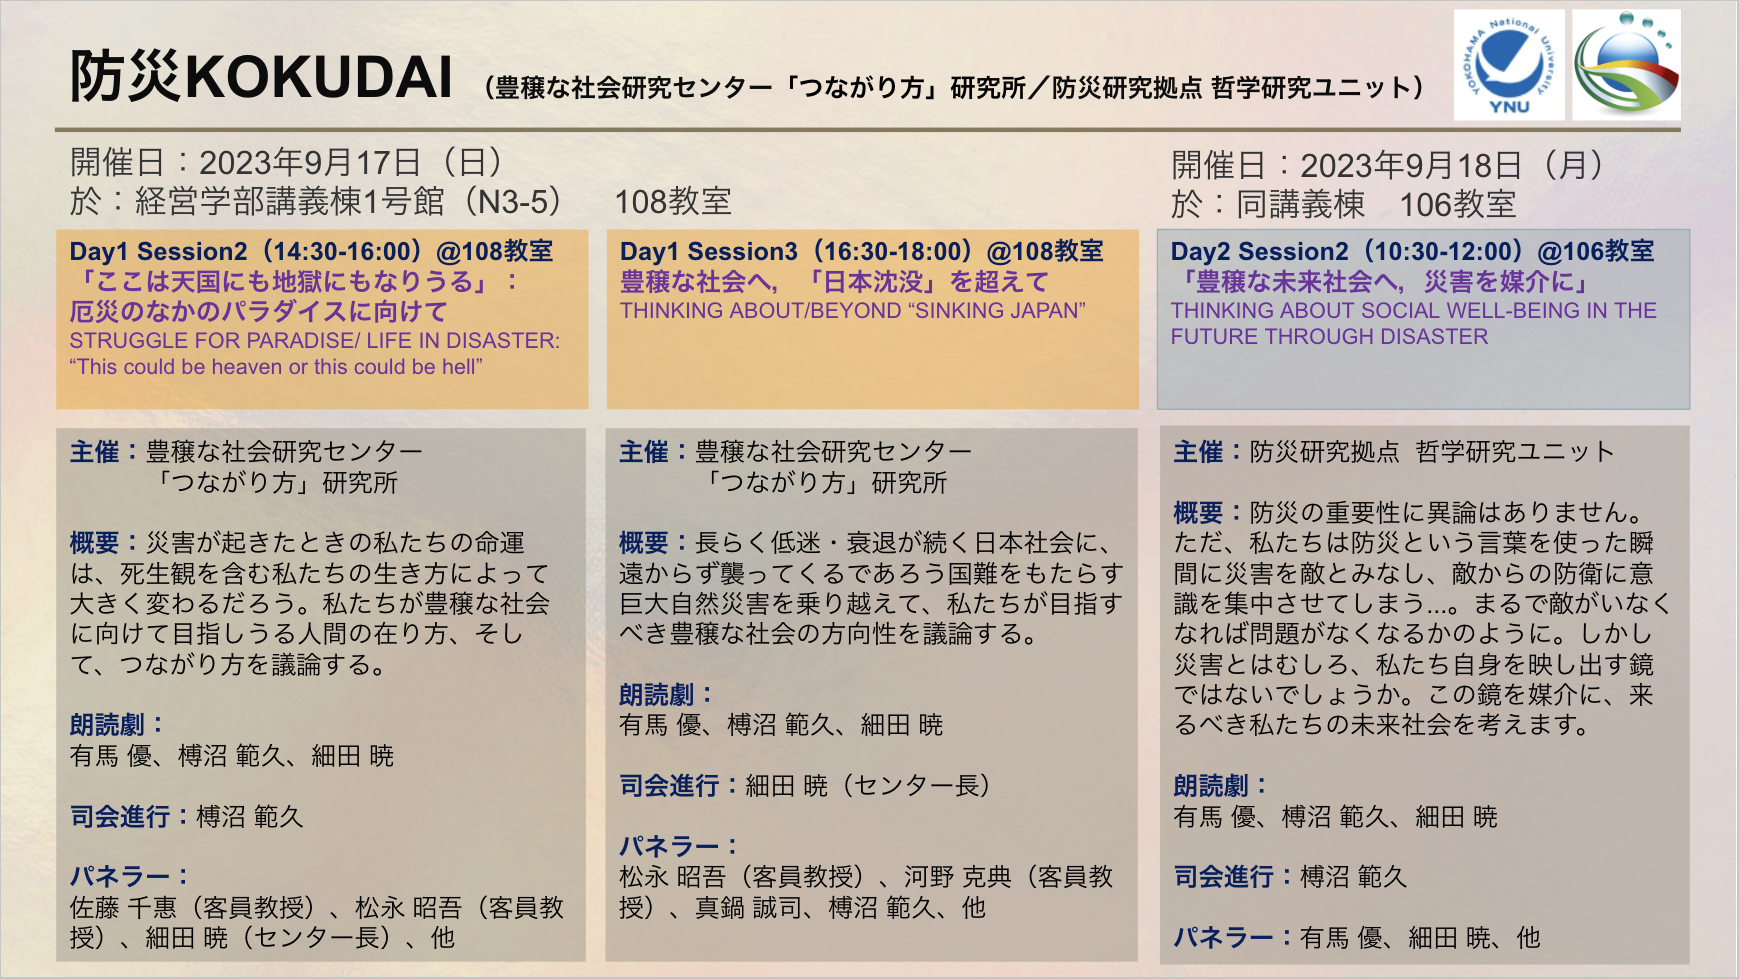 榑沼範久教授と佐藤峰准教授が「防災KOKUDAI」の朗読劇、討論に出演しました。